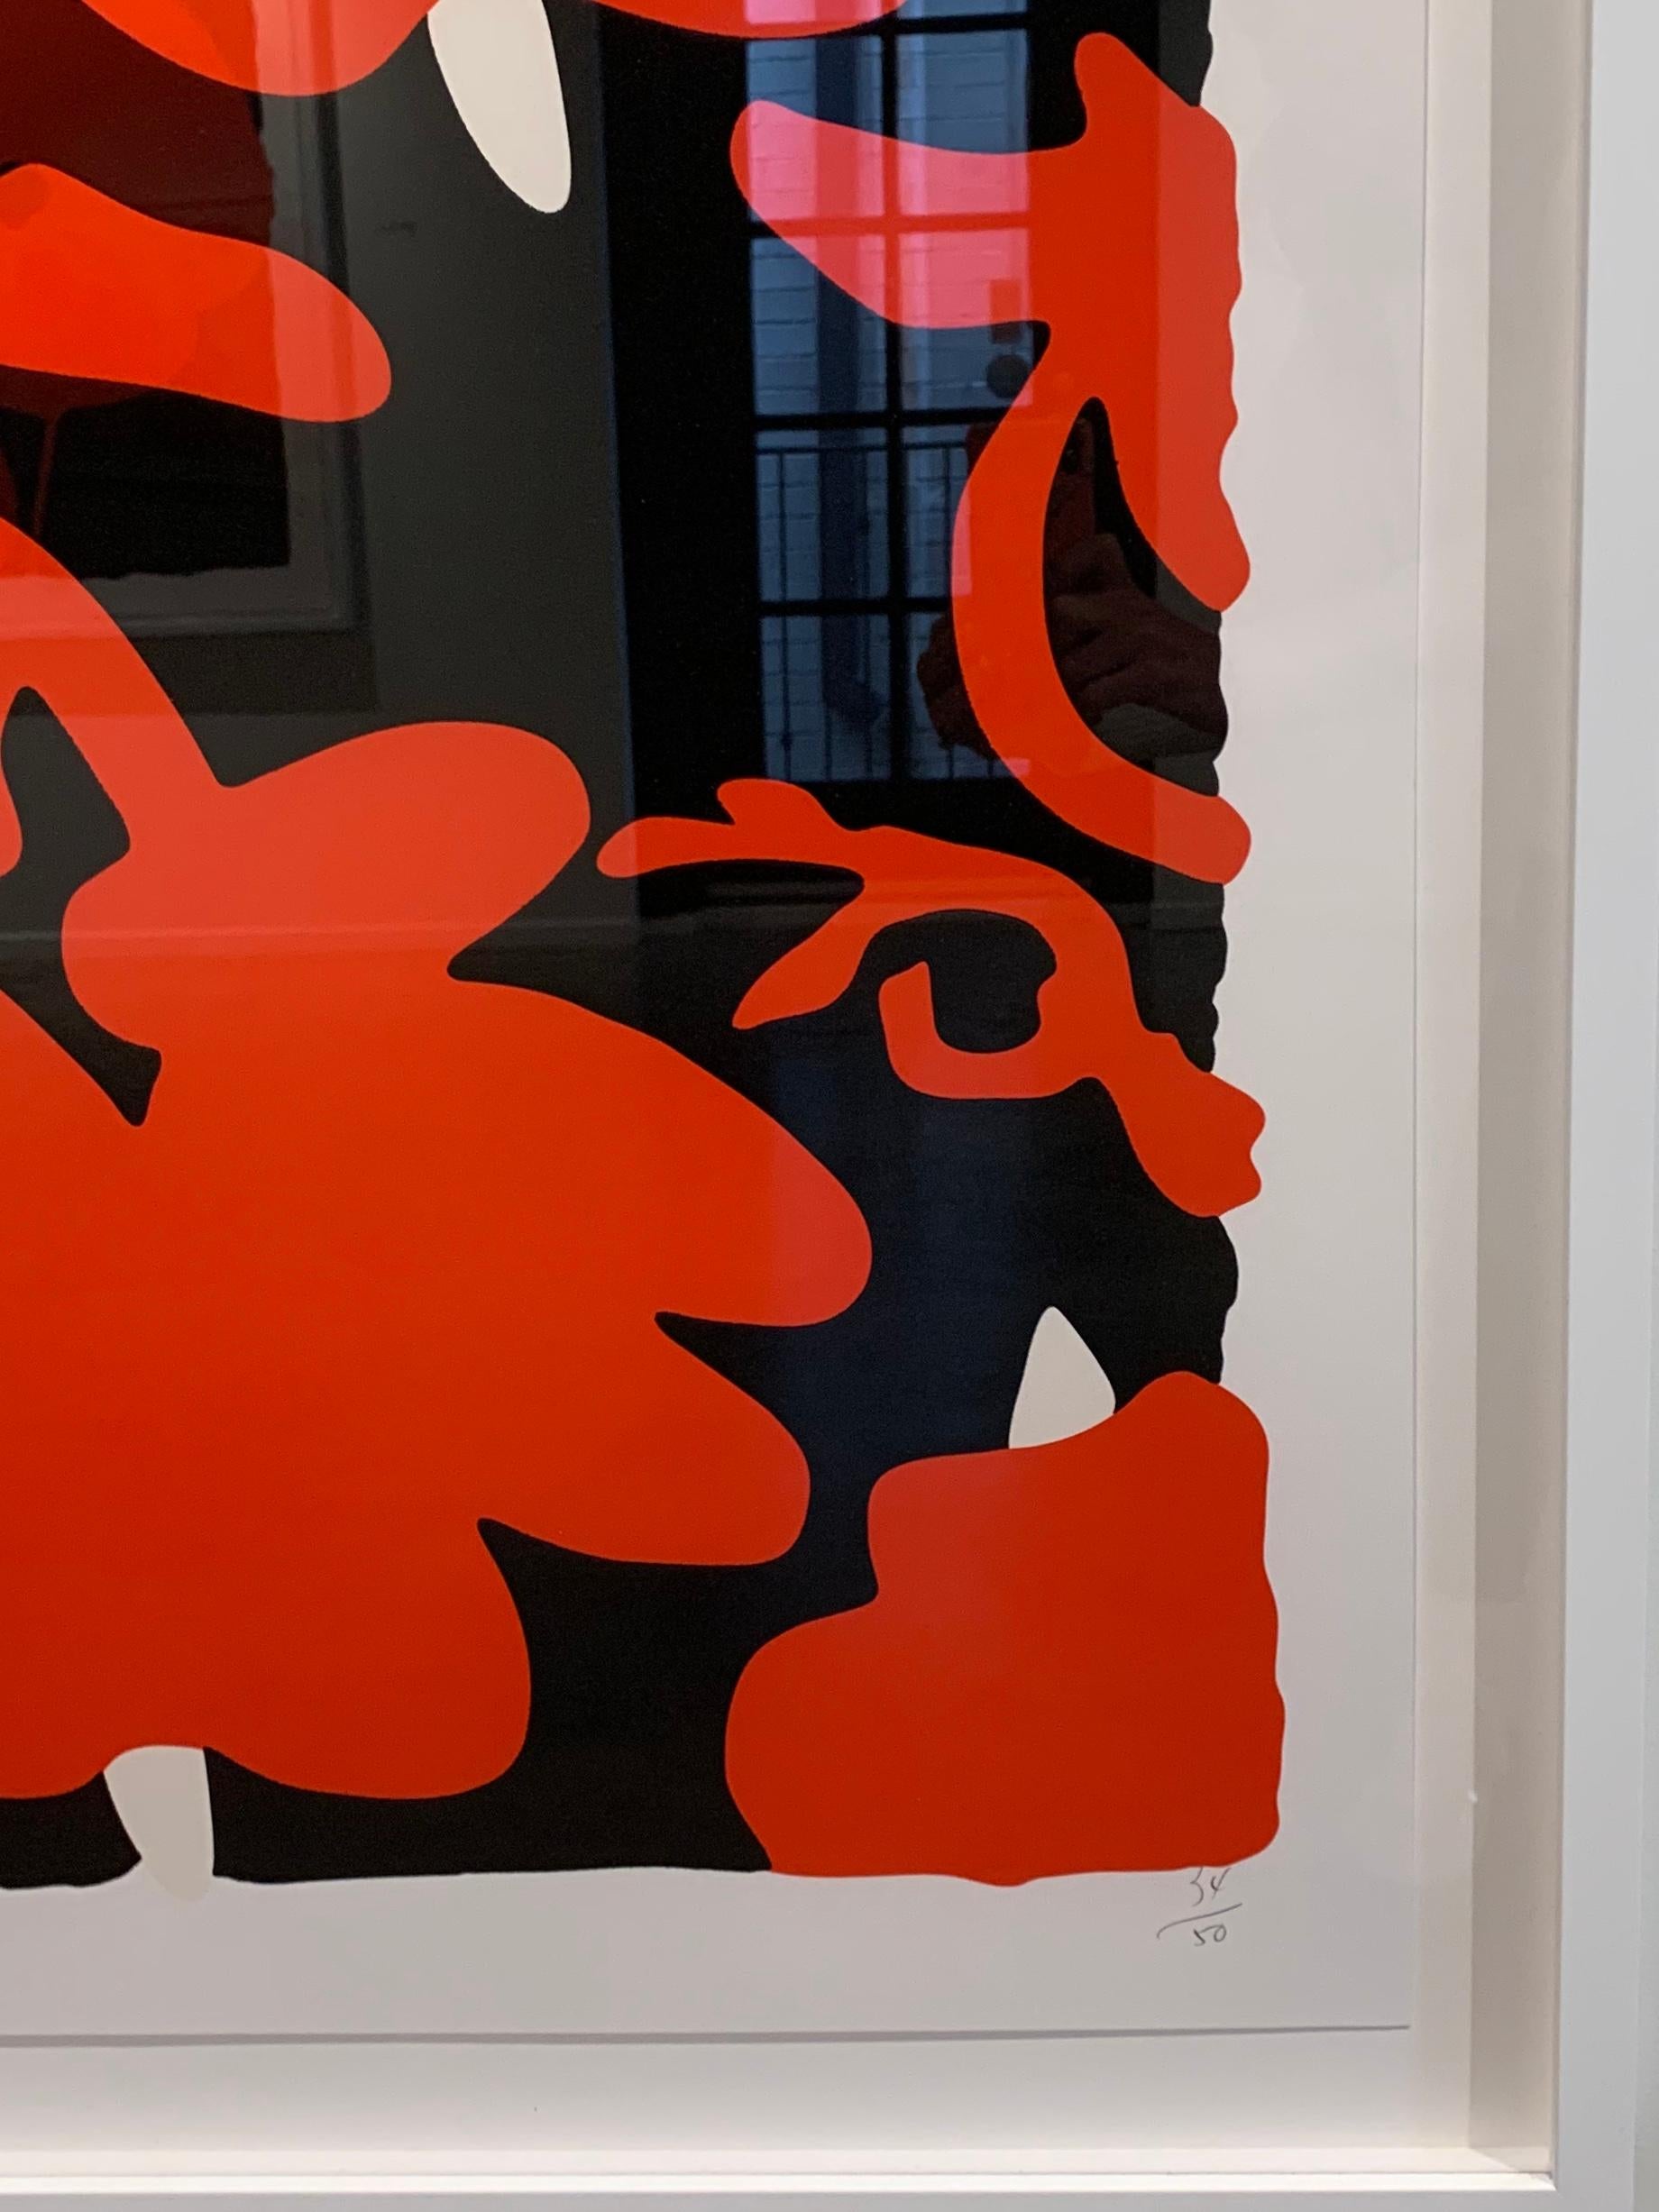 Donald Sultan (geboren 1951)
Laternenblumen (Rot und Schwarz), 2017
Farbsiebdruck mit überdruckter Beflockung auf Rising, 2-lagigem Museumskarton
32 x 32 Zoll.
Ausgabe 34 von 50
Signiert vom Künstler
Gerahmt in weißem Galerierahmen und Glas
